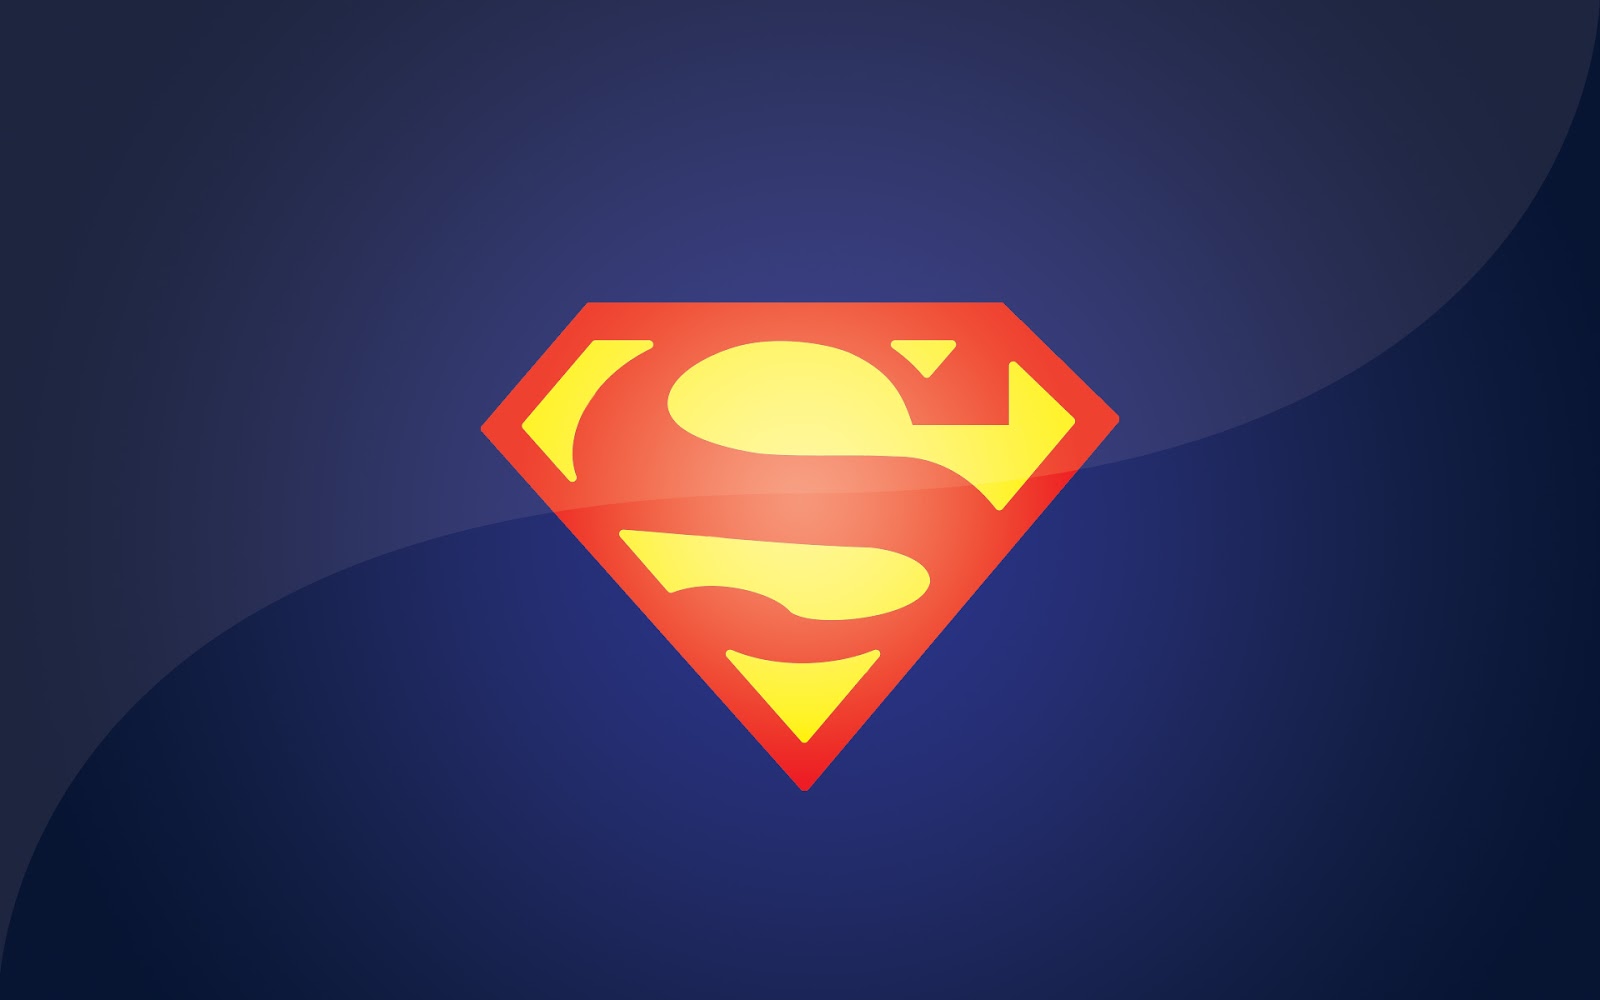 슈퍼맨 로고 벽지,슈퍼맨,슈퍼 히어로,소설 속의 인물,사법 리그,삽화